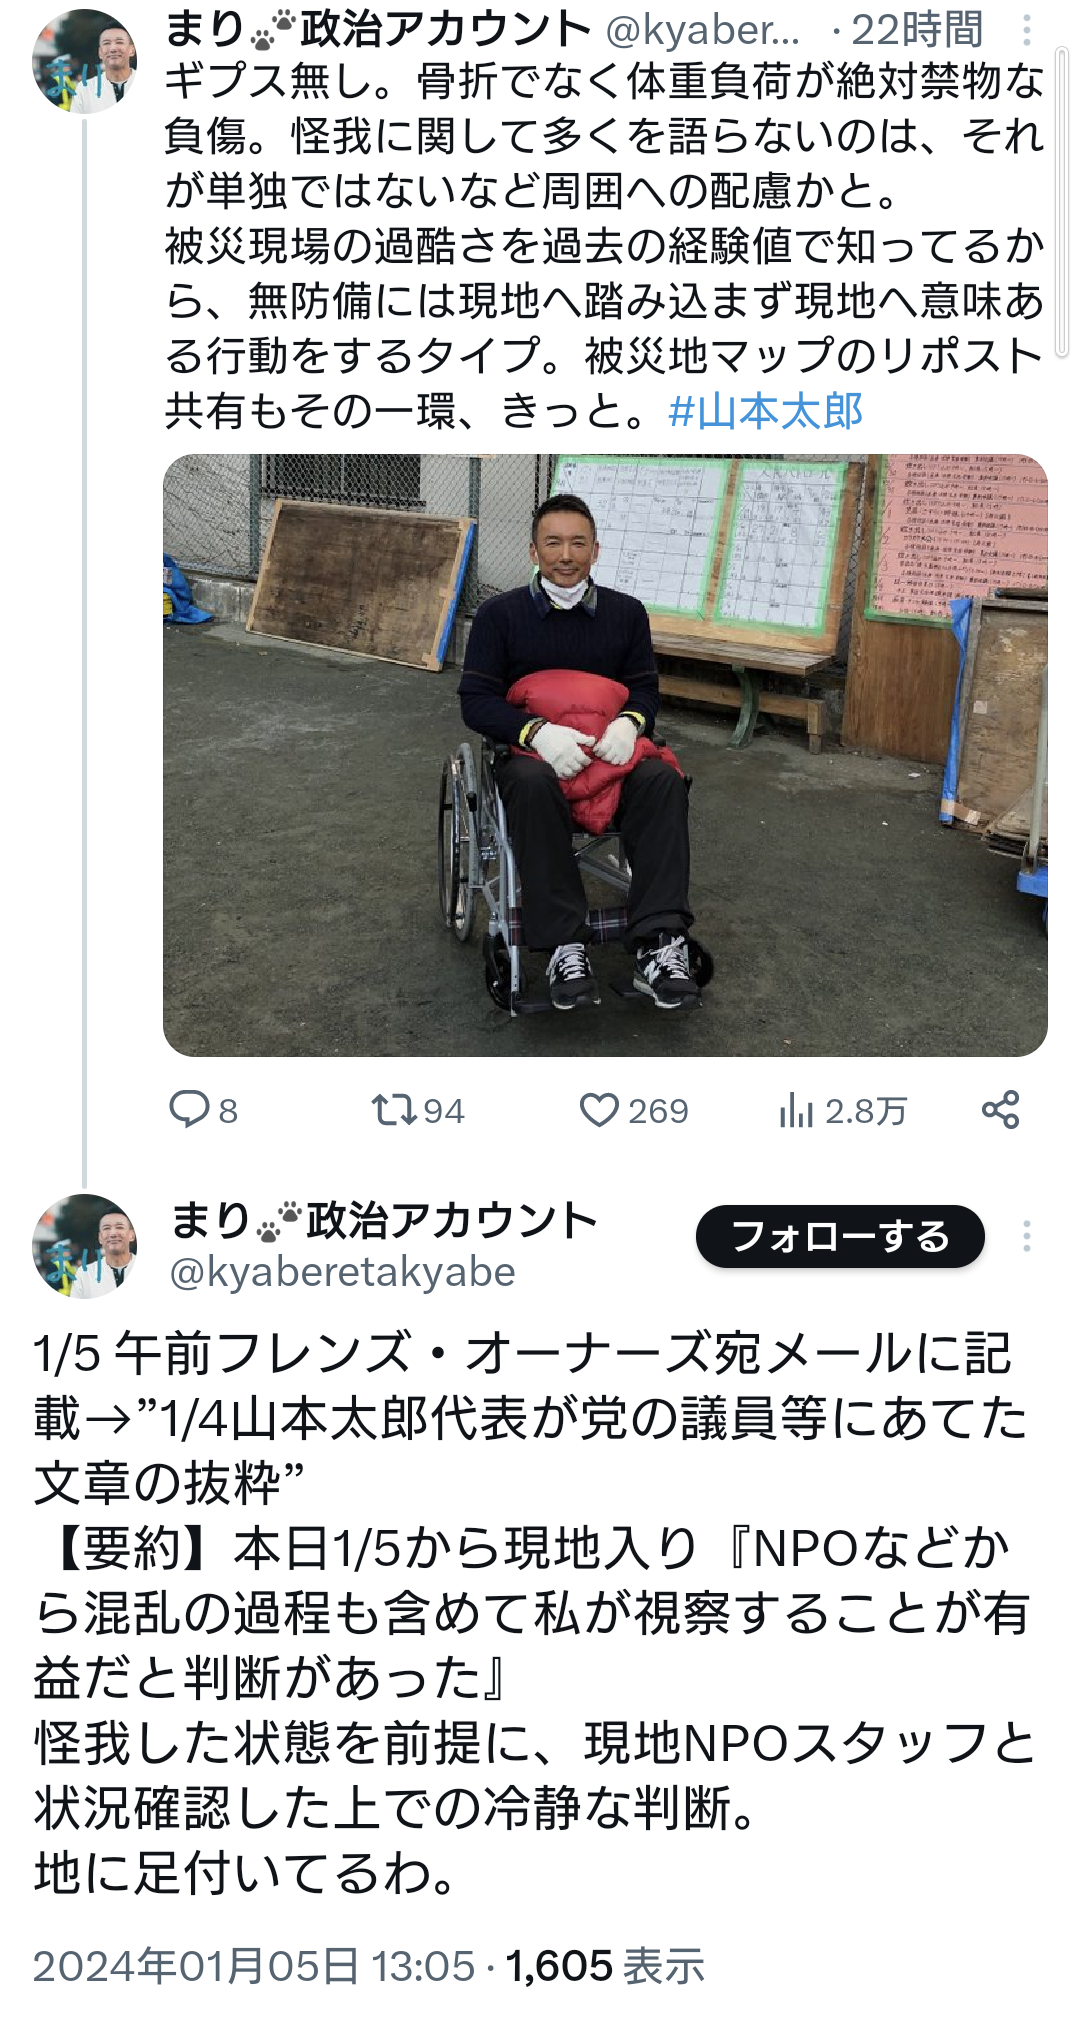 山本太郎さん、怪我で体重負荷絶対禁物いつ倒れてもおかしくない状態の体で被災地に駆けつけていた